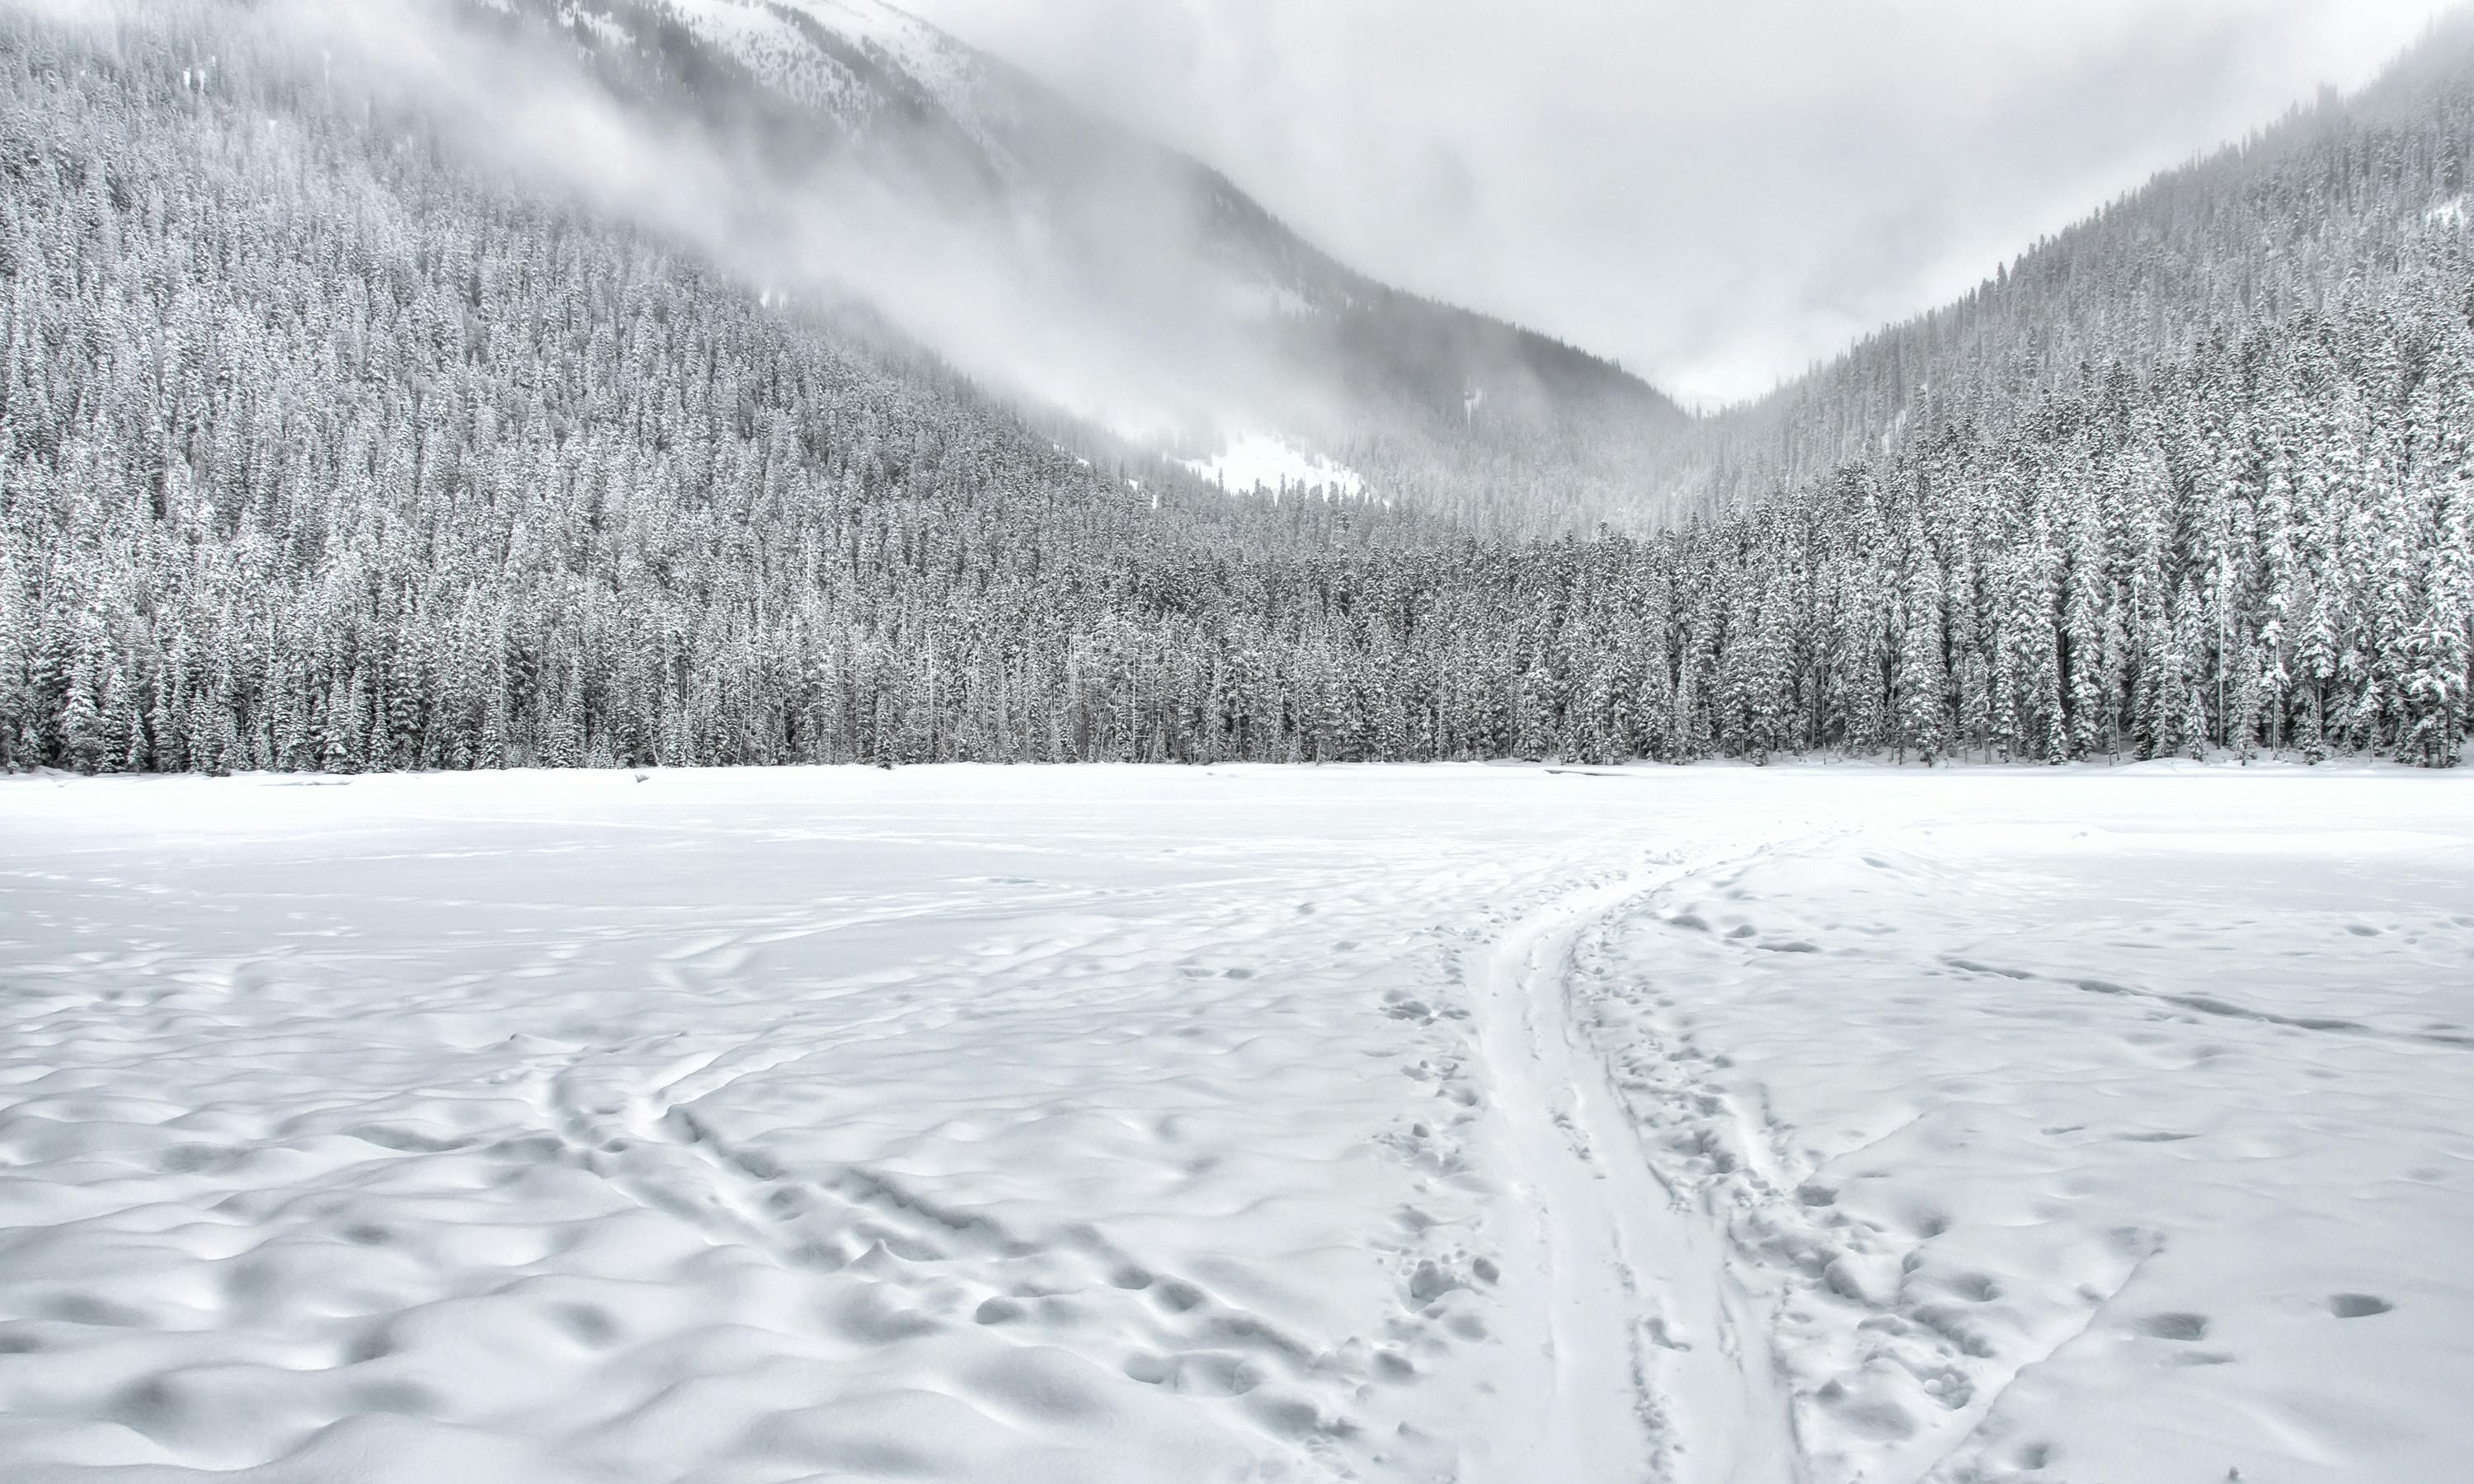 50.000+ Schnee Bilder und Fotos · Kostenlos Downloaden · Pexels